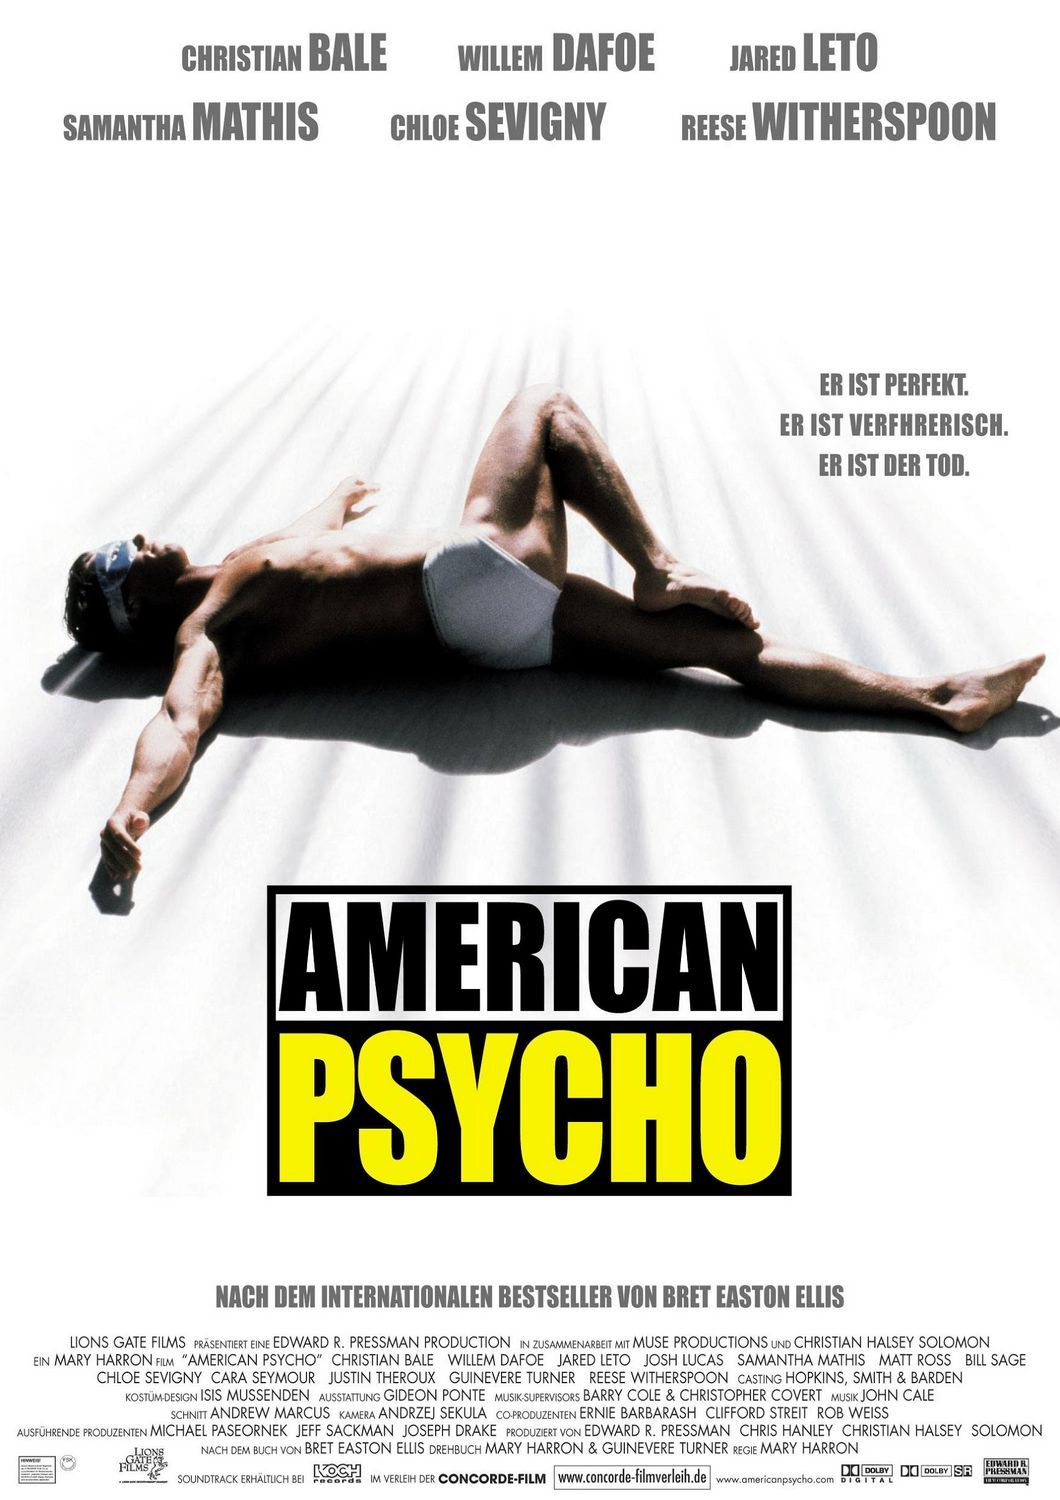 Постер - Американский психопат: 1060x1500 / 183 Кб